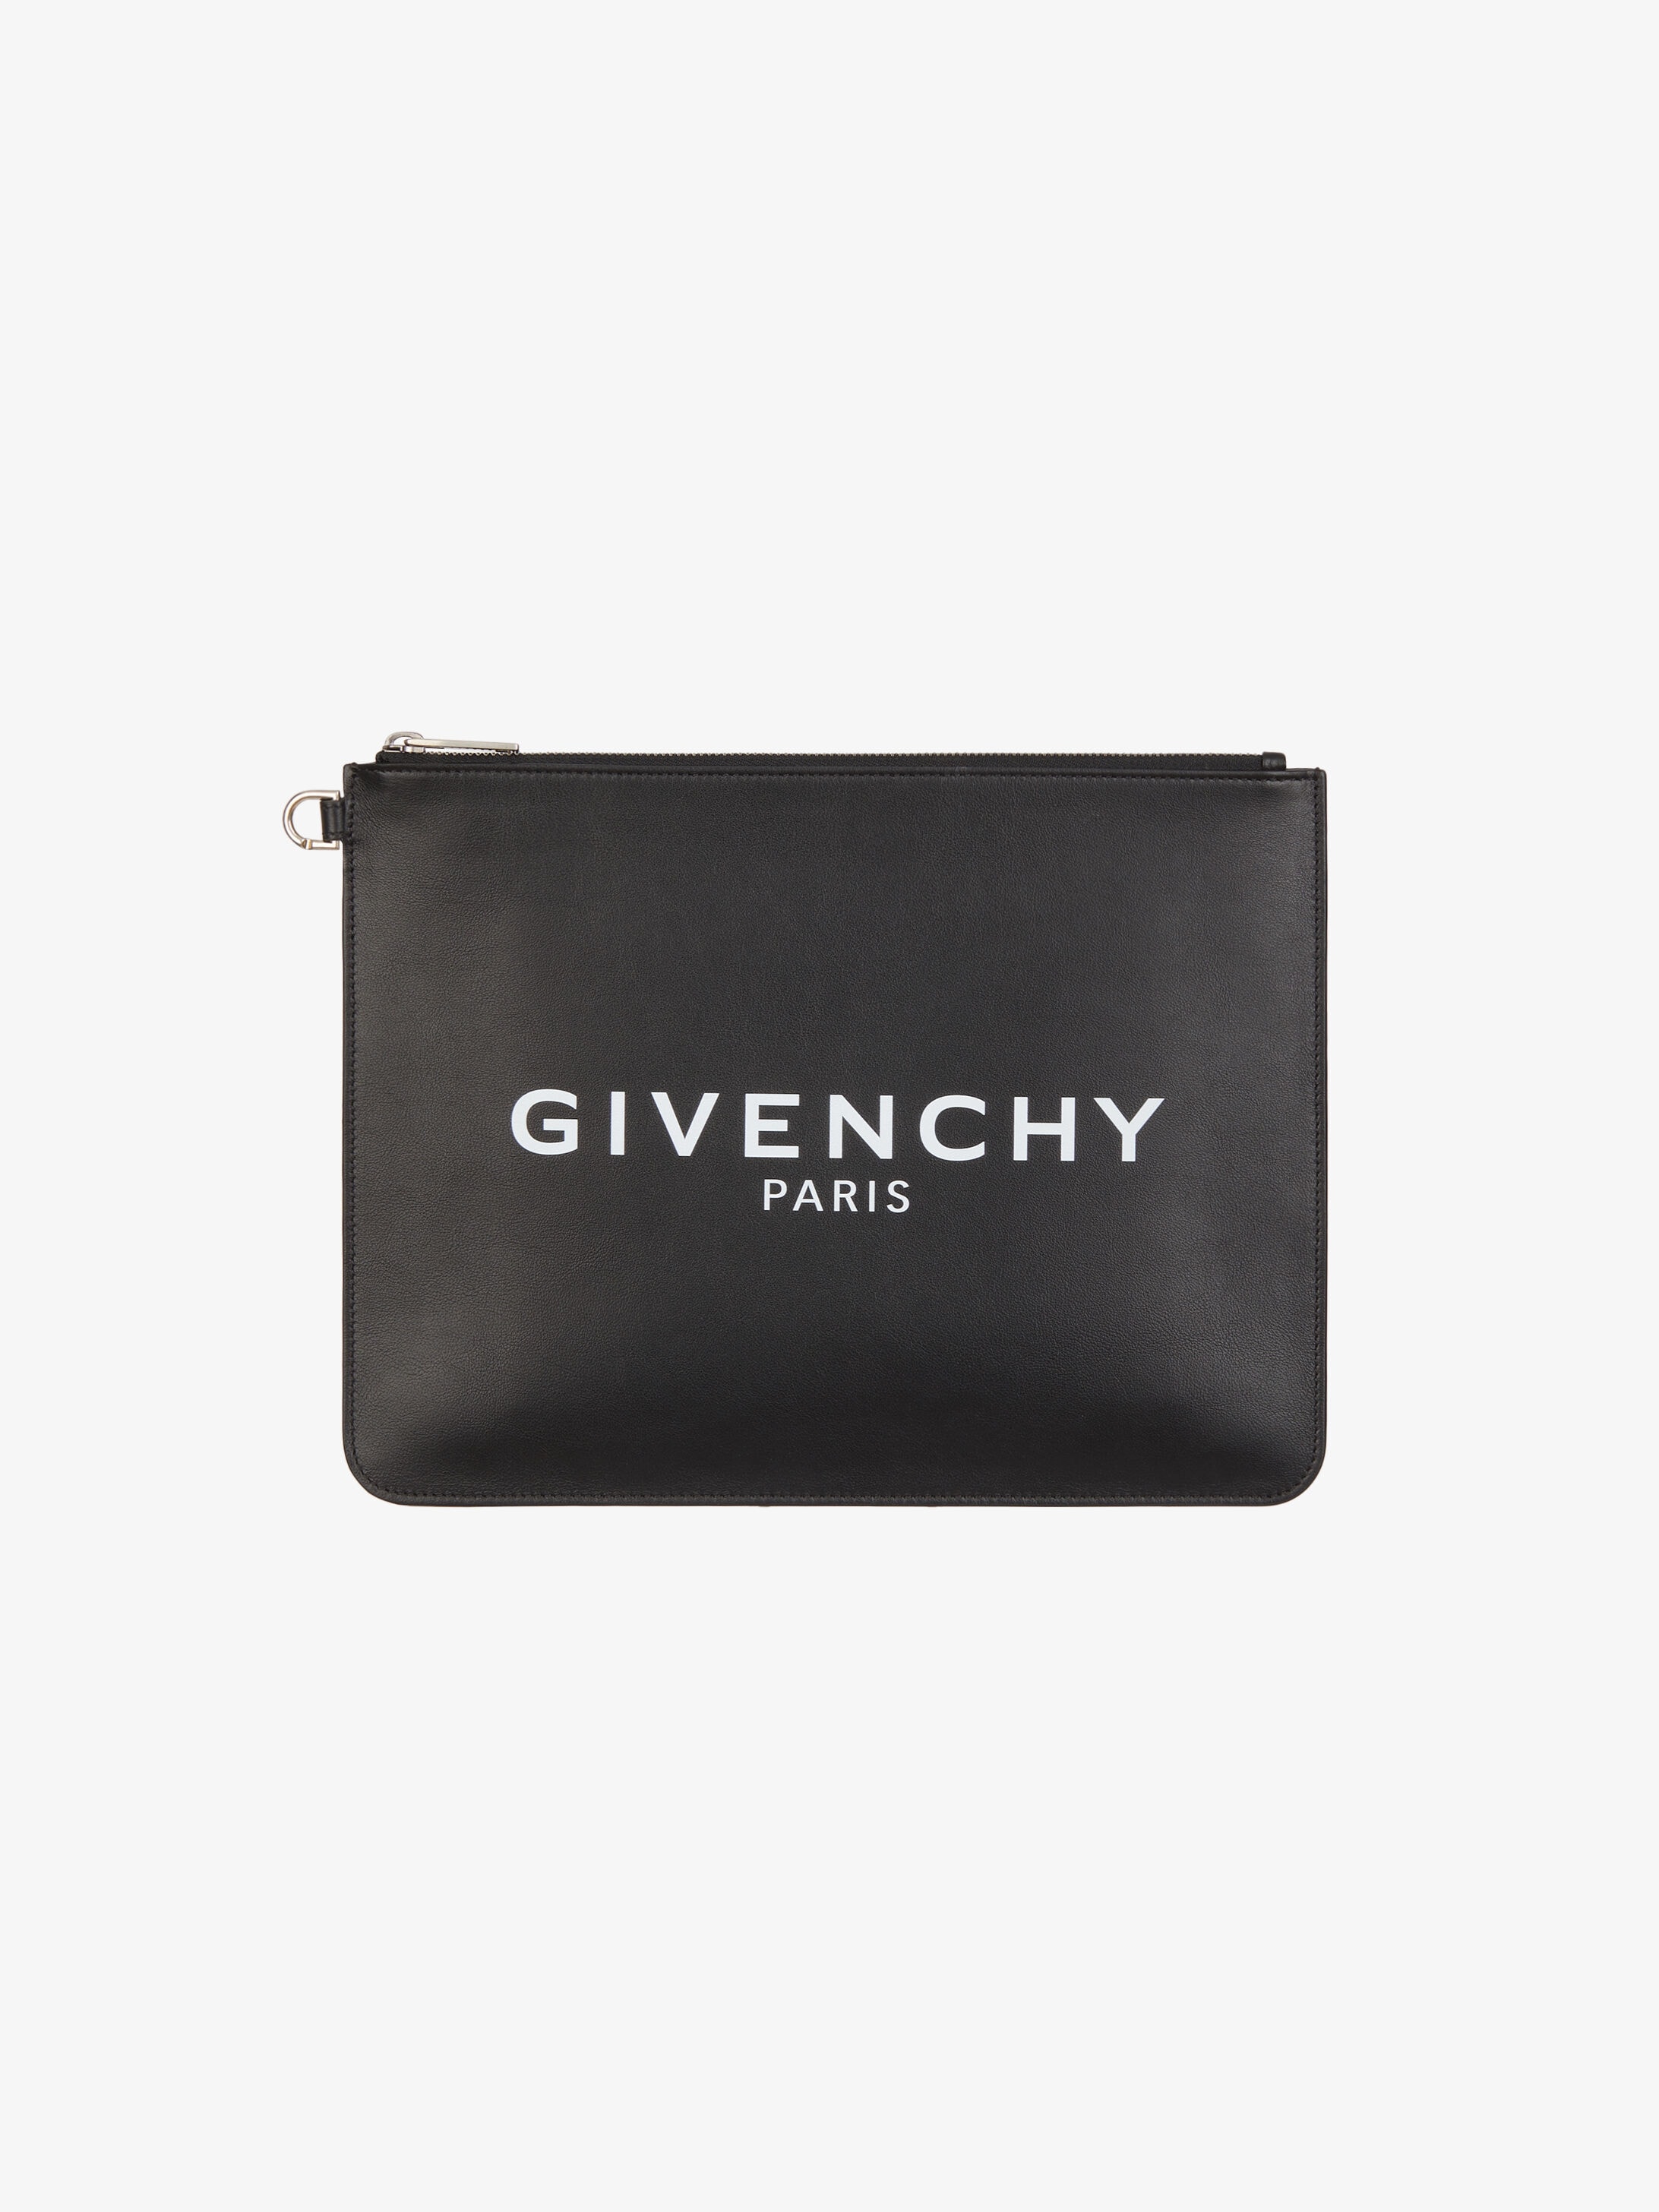 Givenchy Pouch Sale, 50% OFF | espirituviajero.com